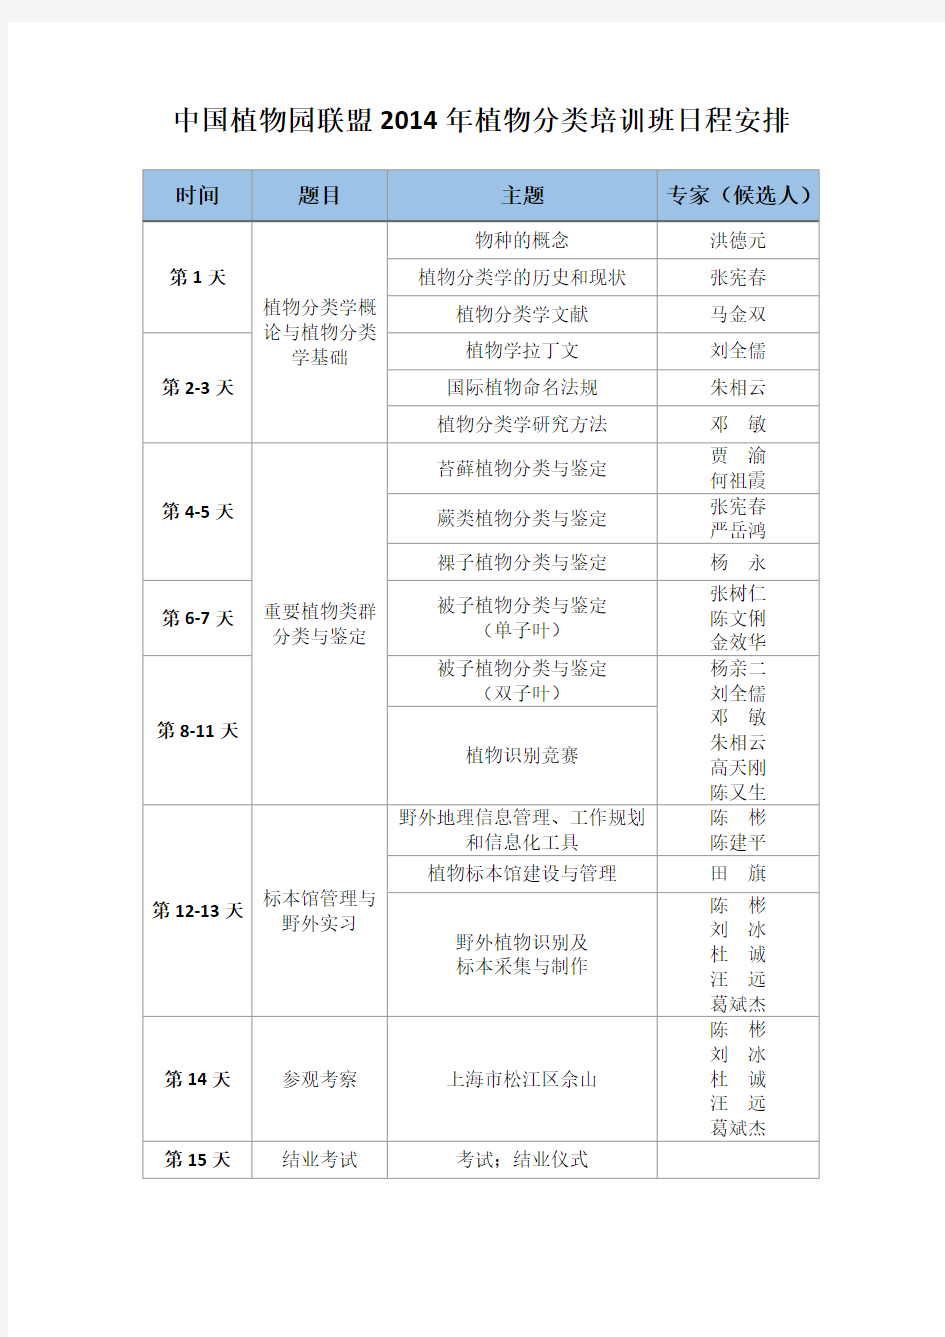 中国植物园联盟2014年植物分类培训班日程安排